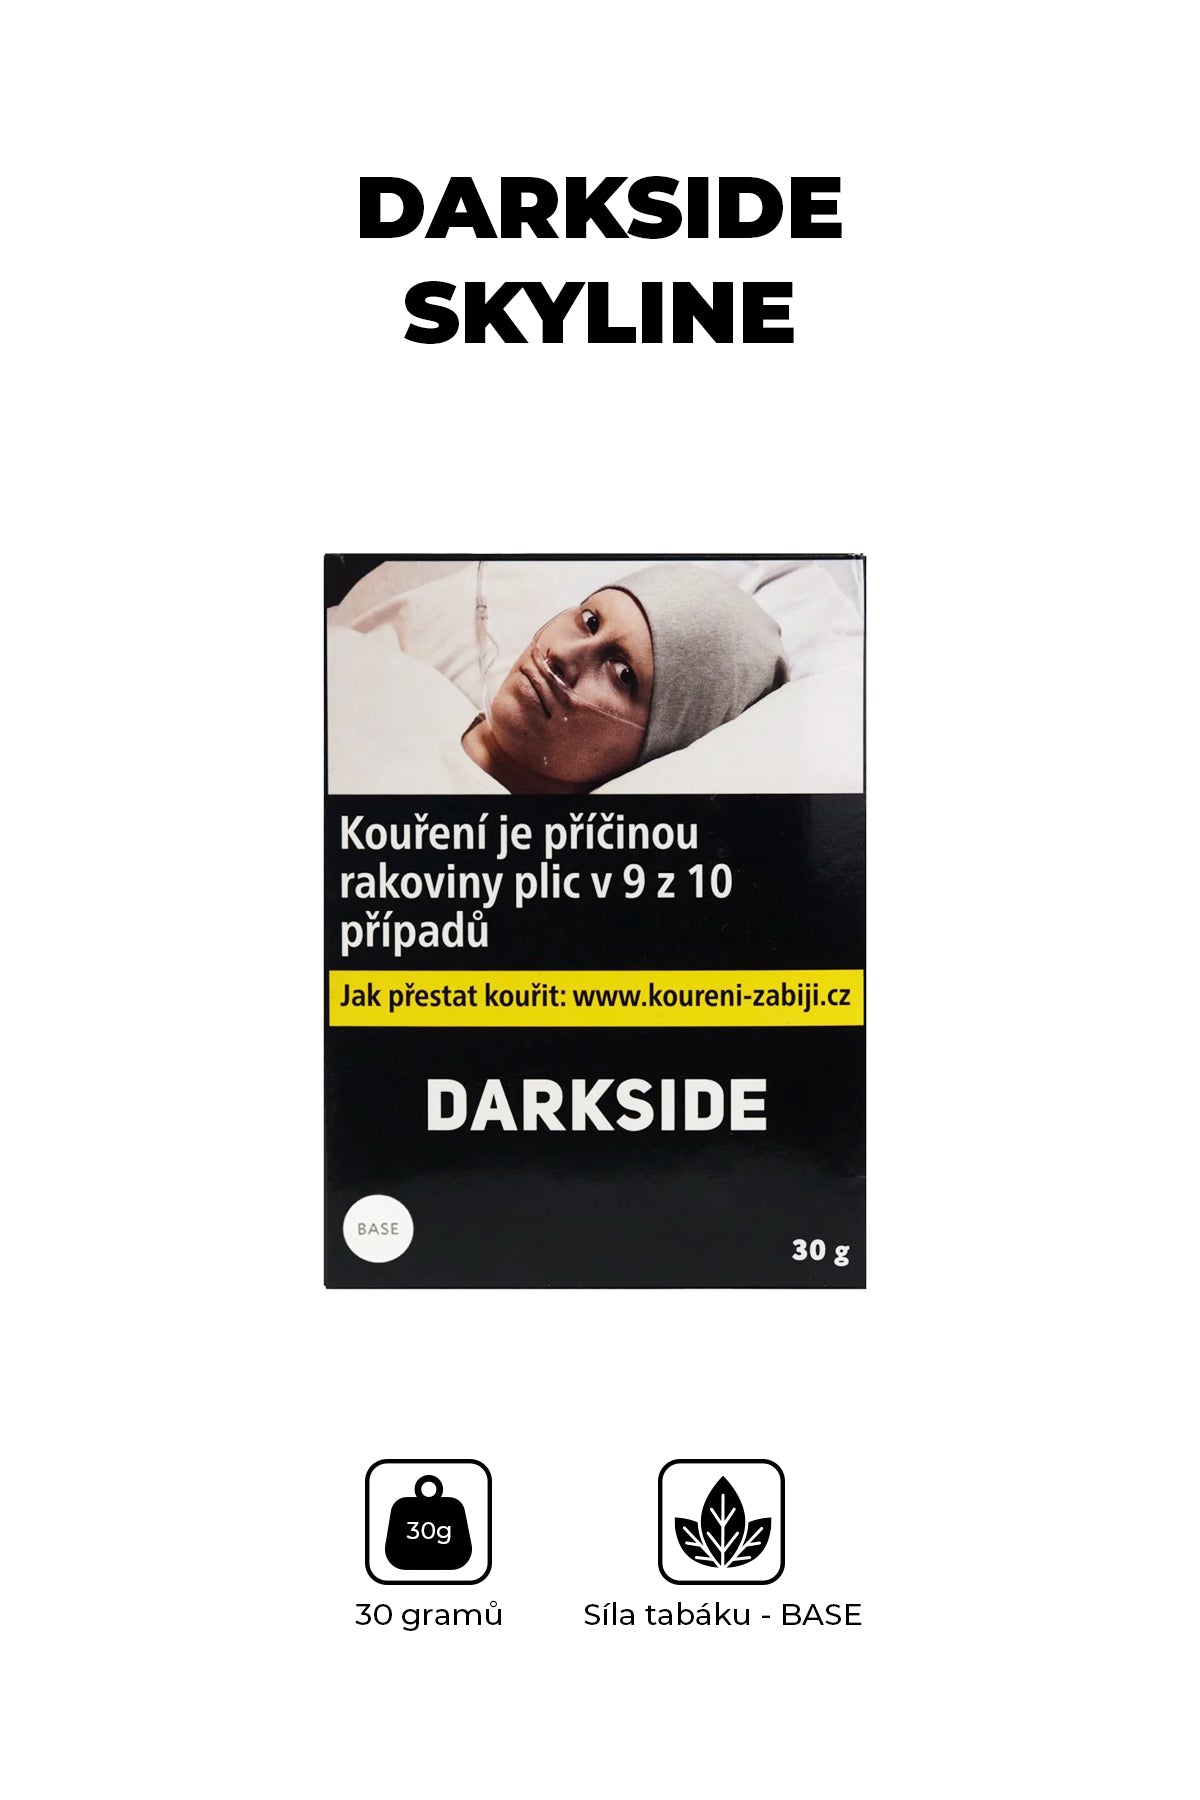 Tabák - Darkside Base 30g - Skyline